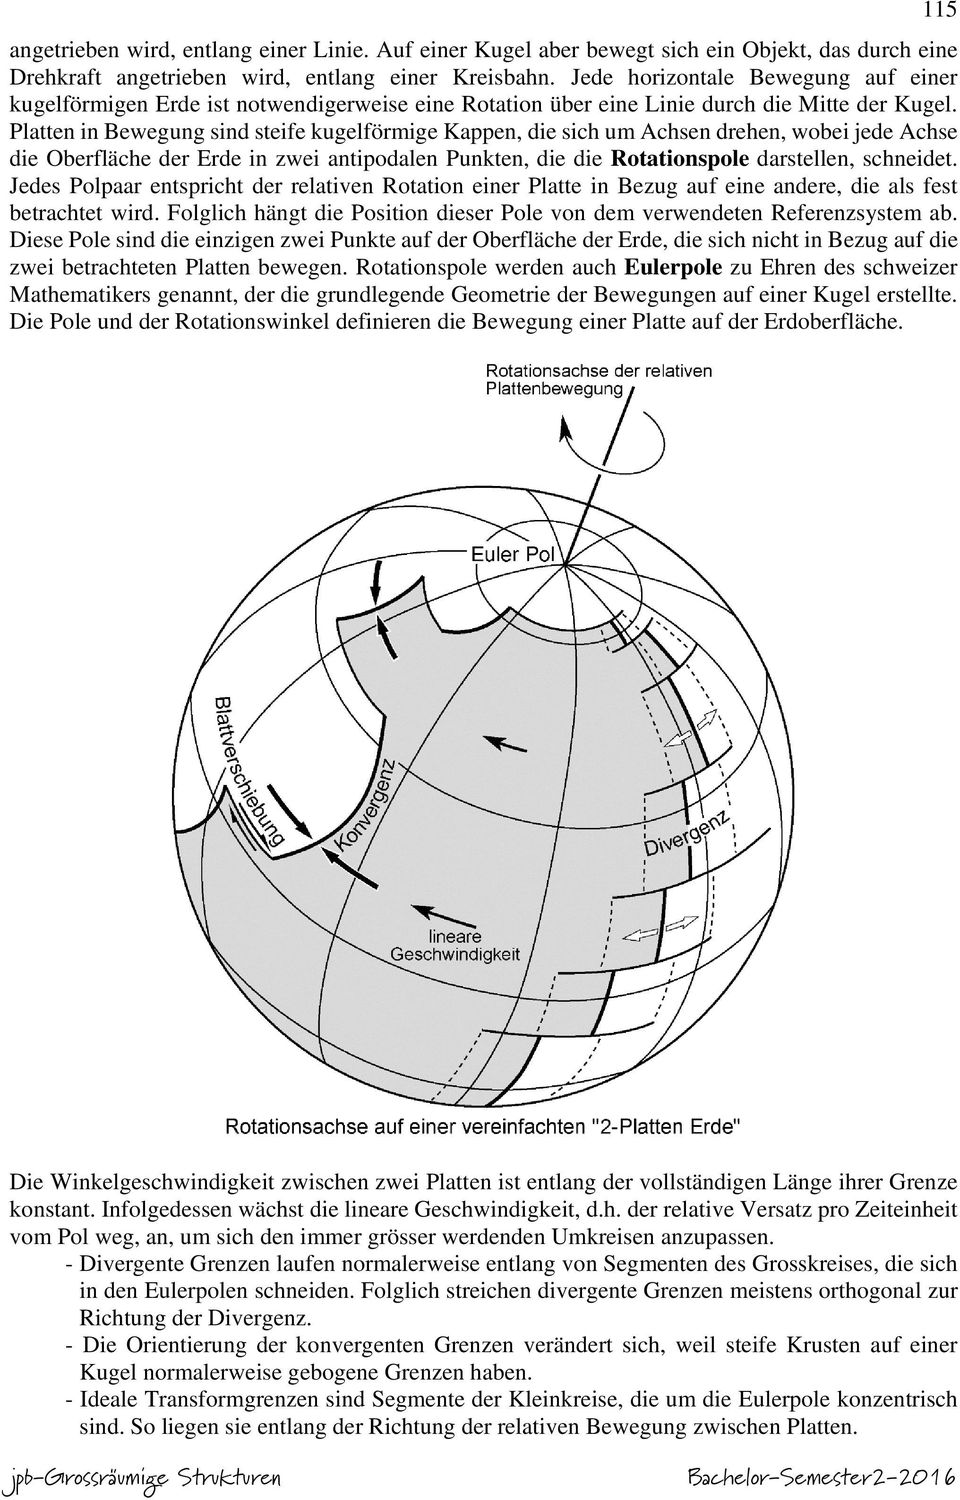 Platten in Bewegung sind steife kugelförmige Kappen, die sich um Achsen drehen, wobei jede Achse die Oberfläche der Erde in zwei antipodalen Punkten, die die Rotationspole darstellen, schneidet.